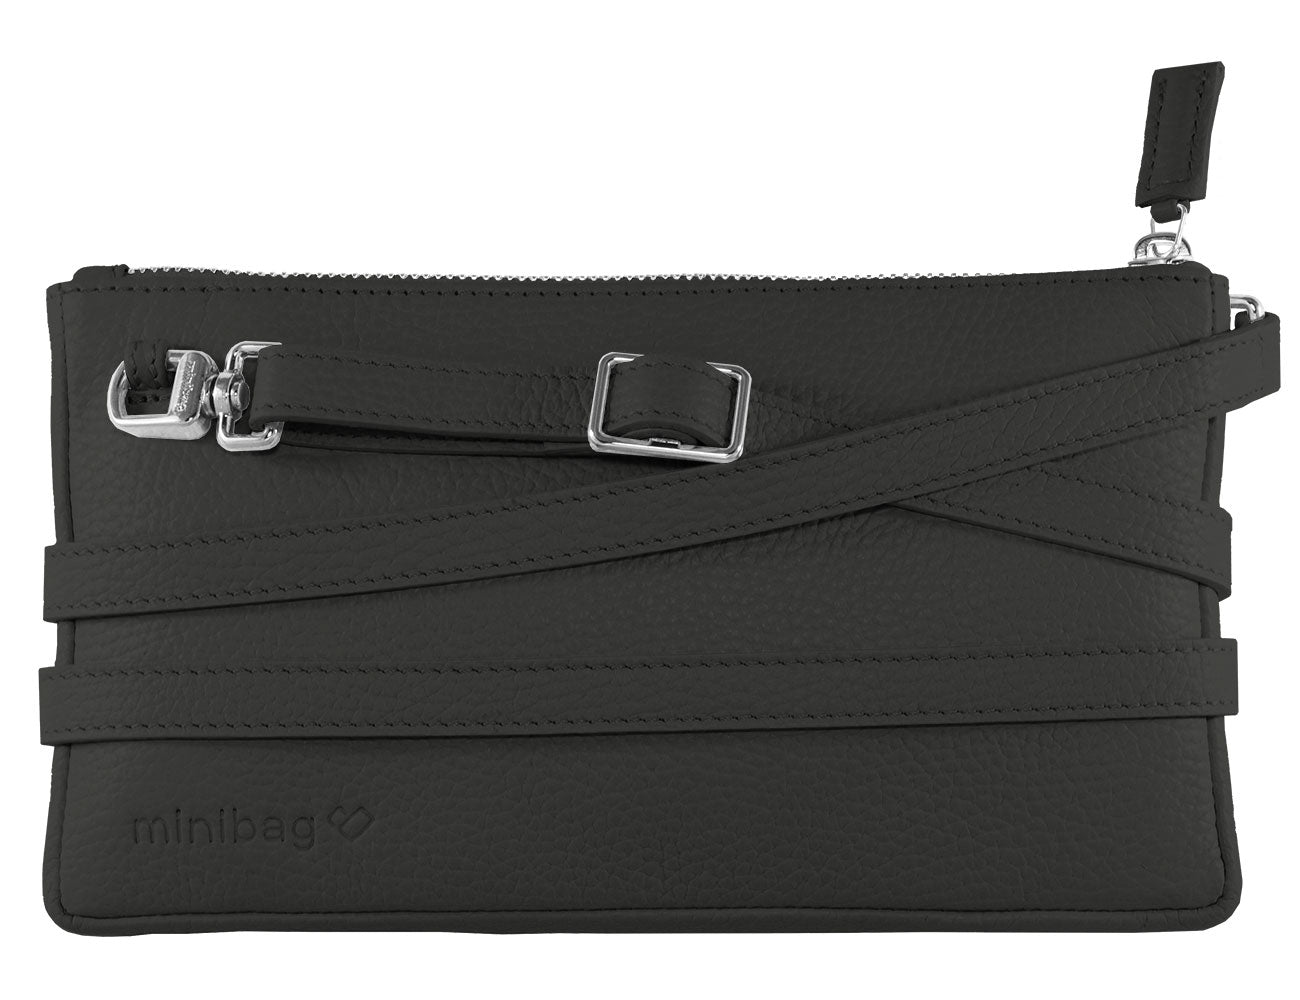 minibag black, schwarze Ledertasche, Geldtasche zum Umhängen, schwarze Clutch, minibag schwarz